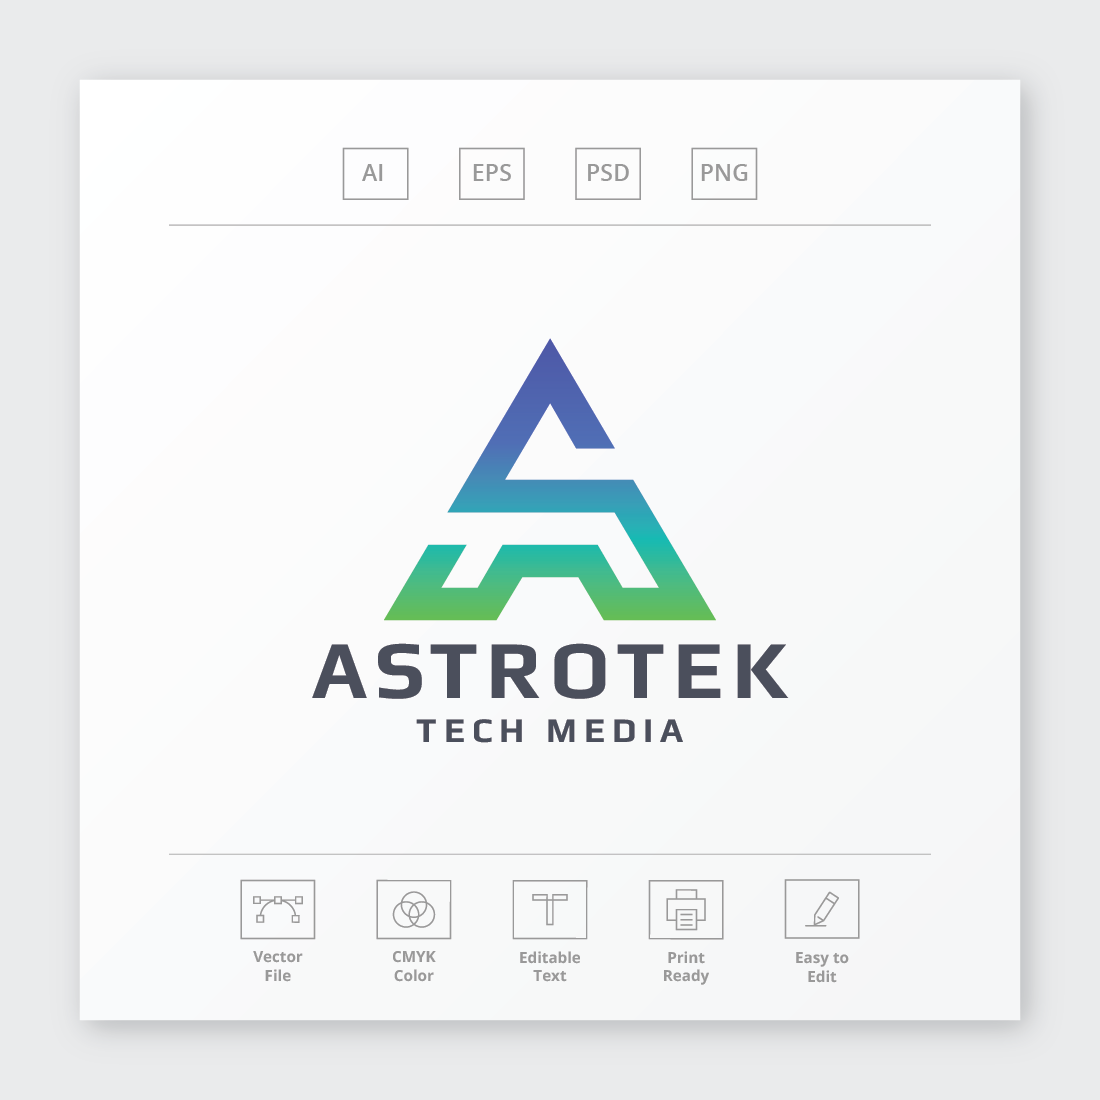 Astrotek Letter A Logo cover image.